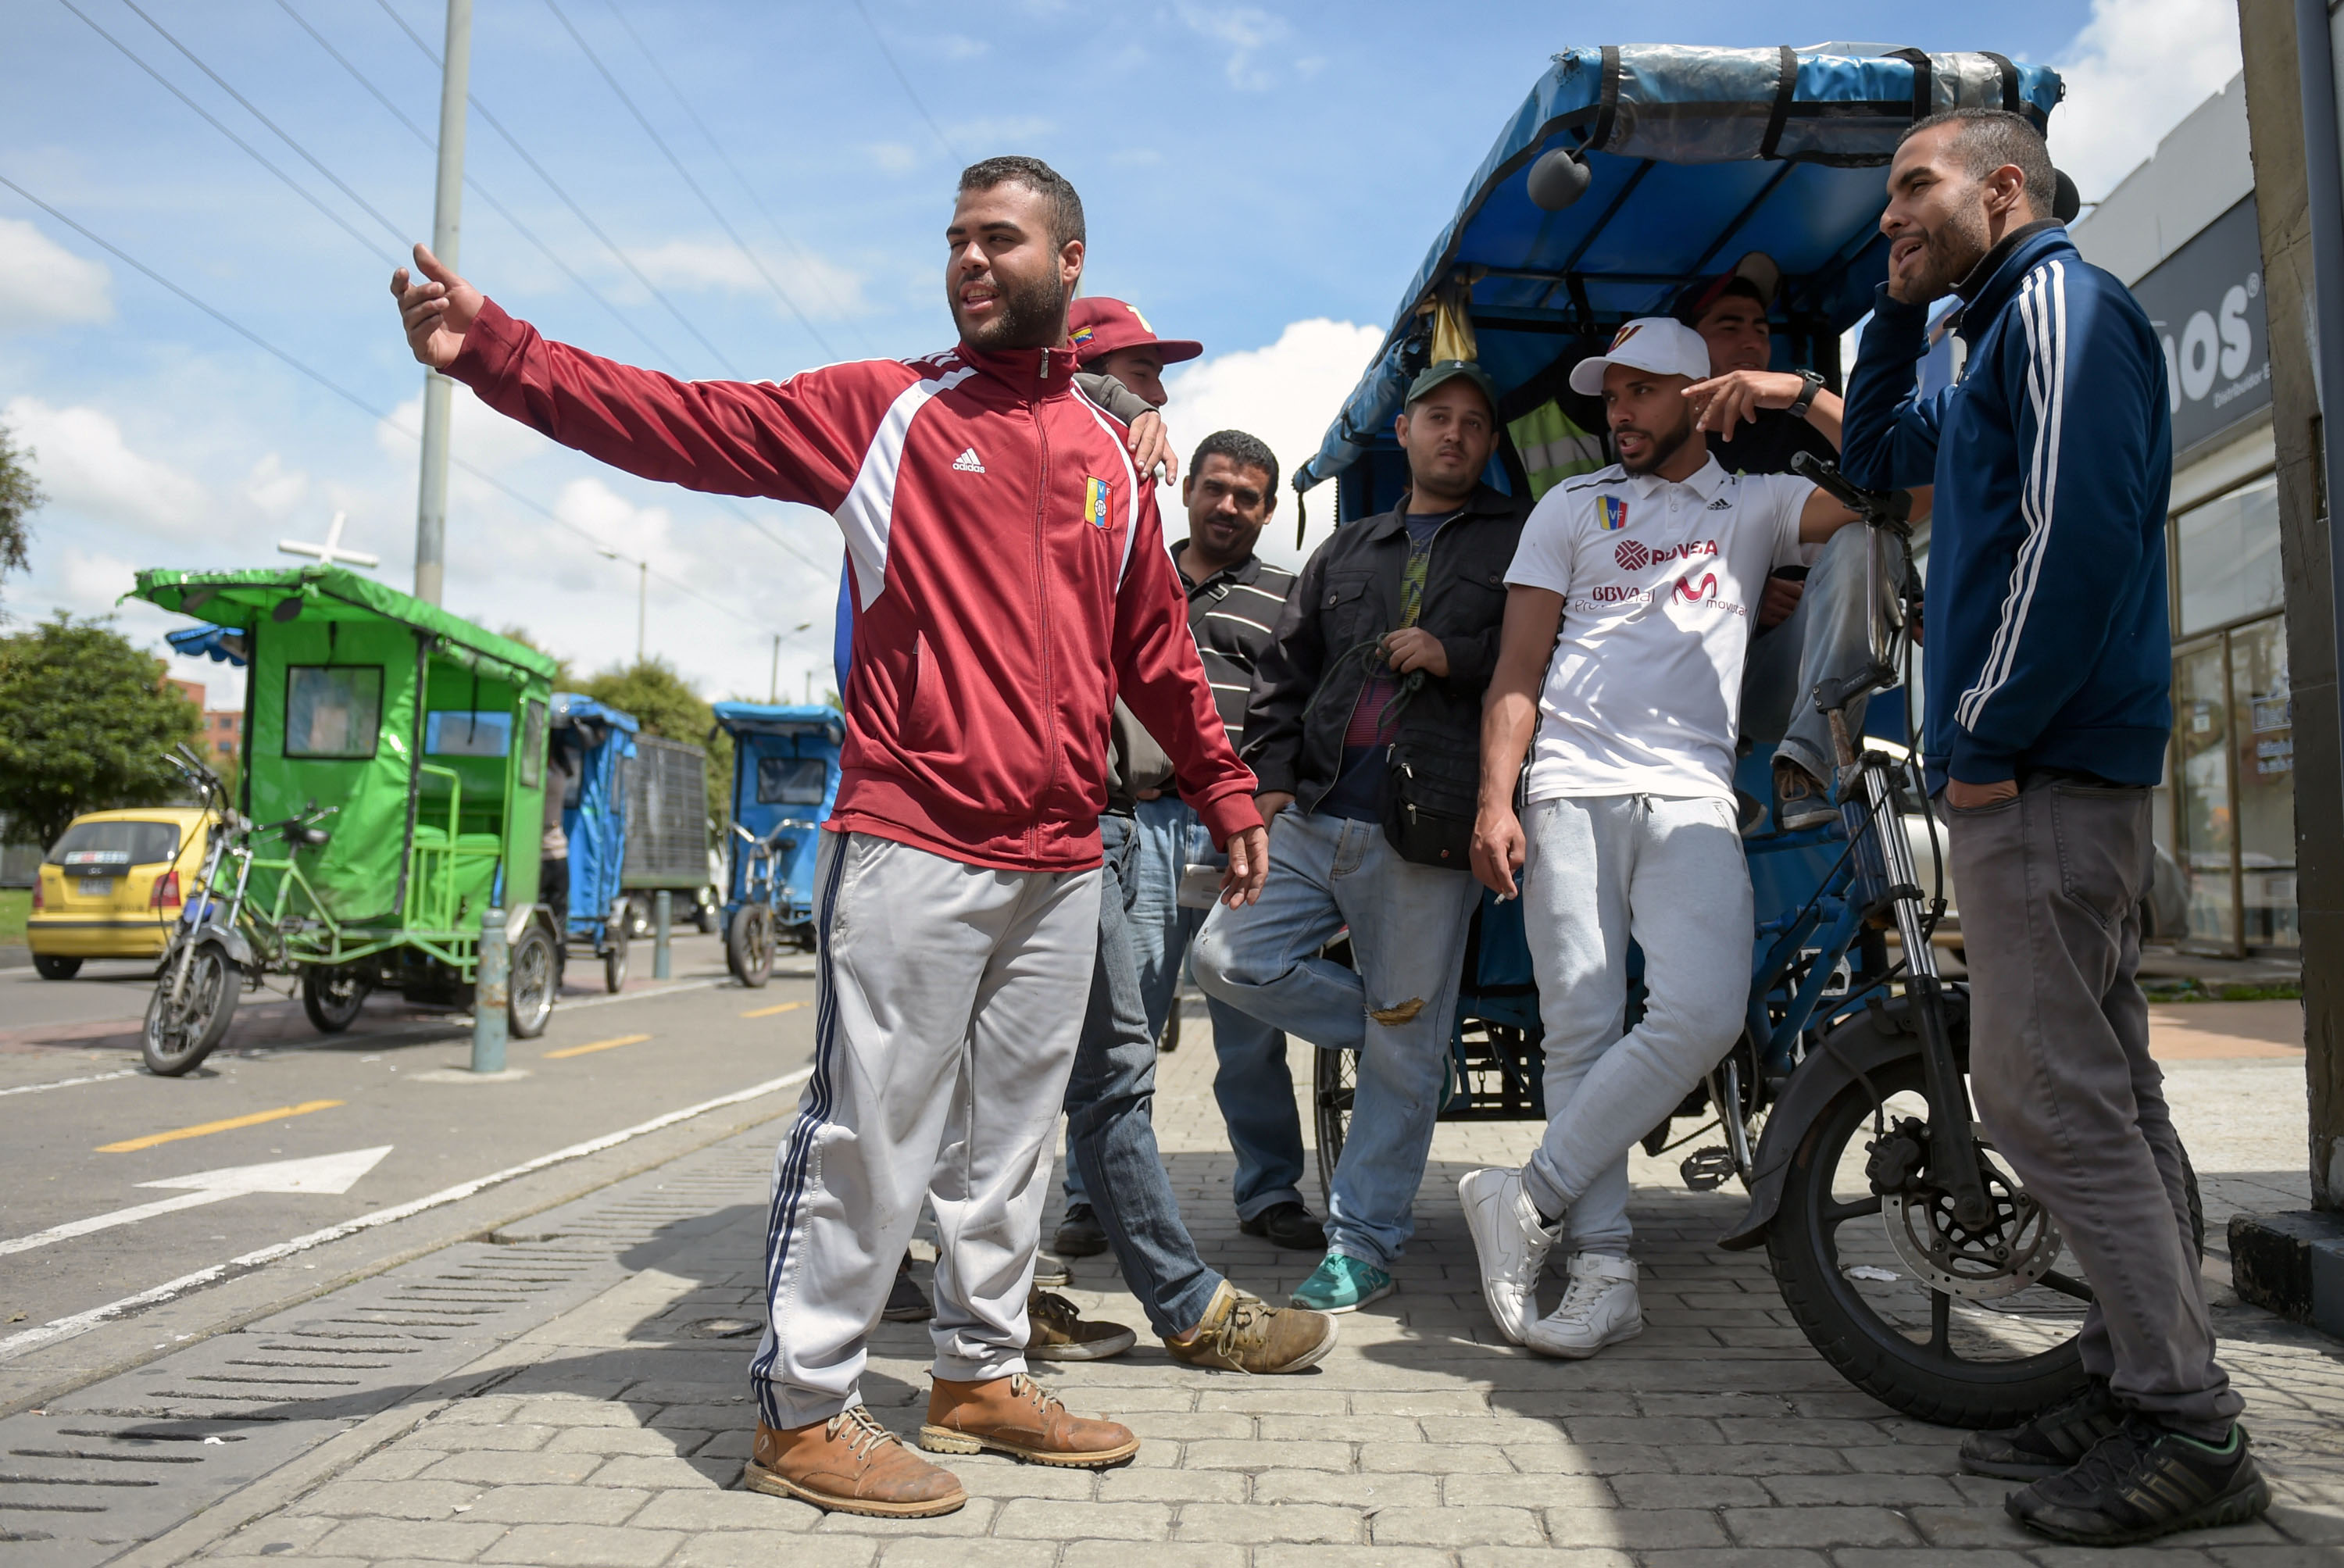 شباب فنزويلا يهربون من أزمات وطنهم الطاحنة إلى كولومبيا